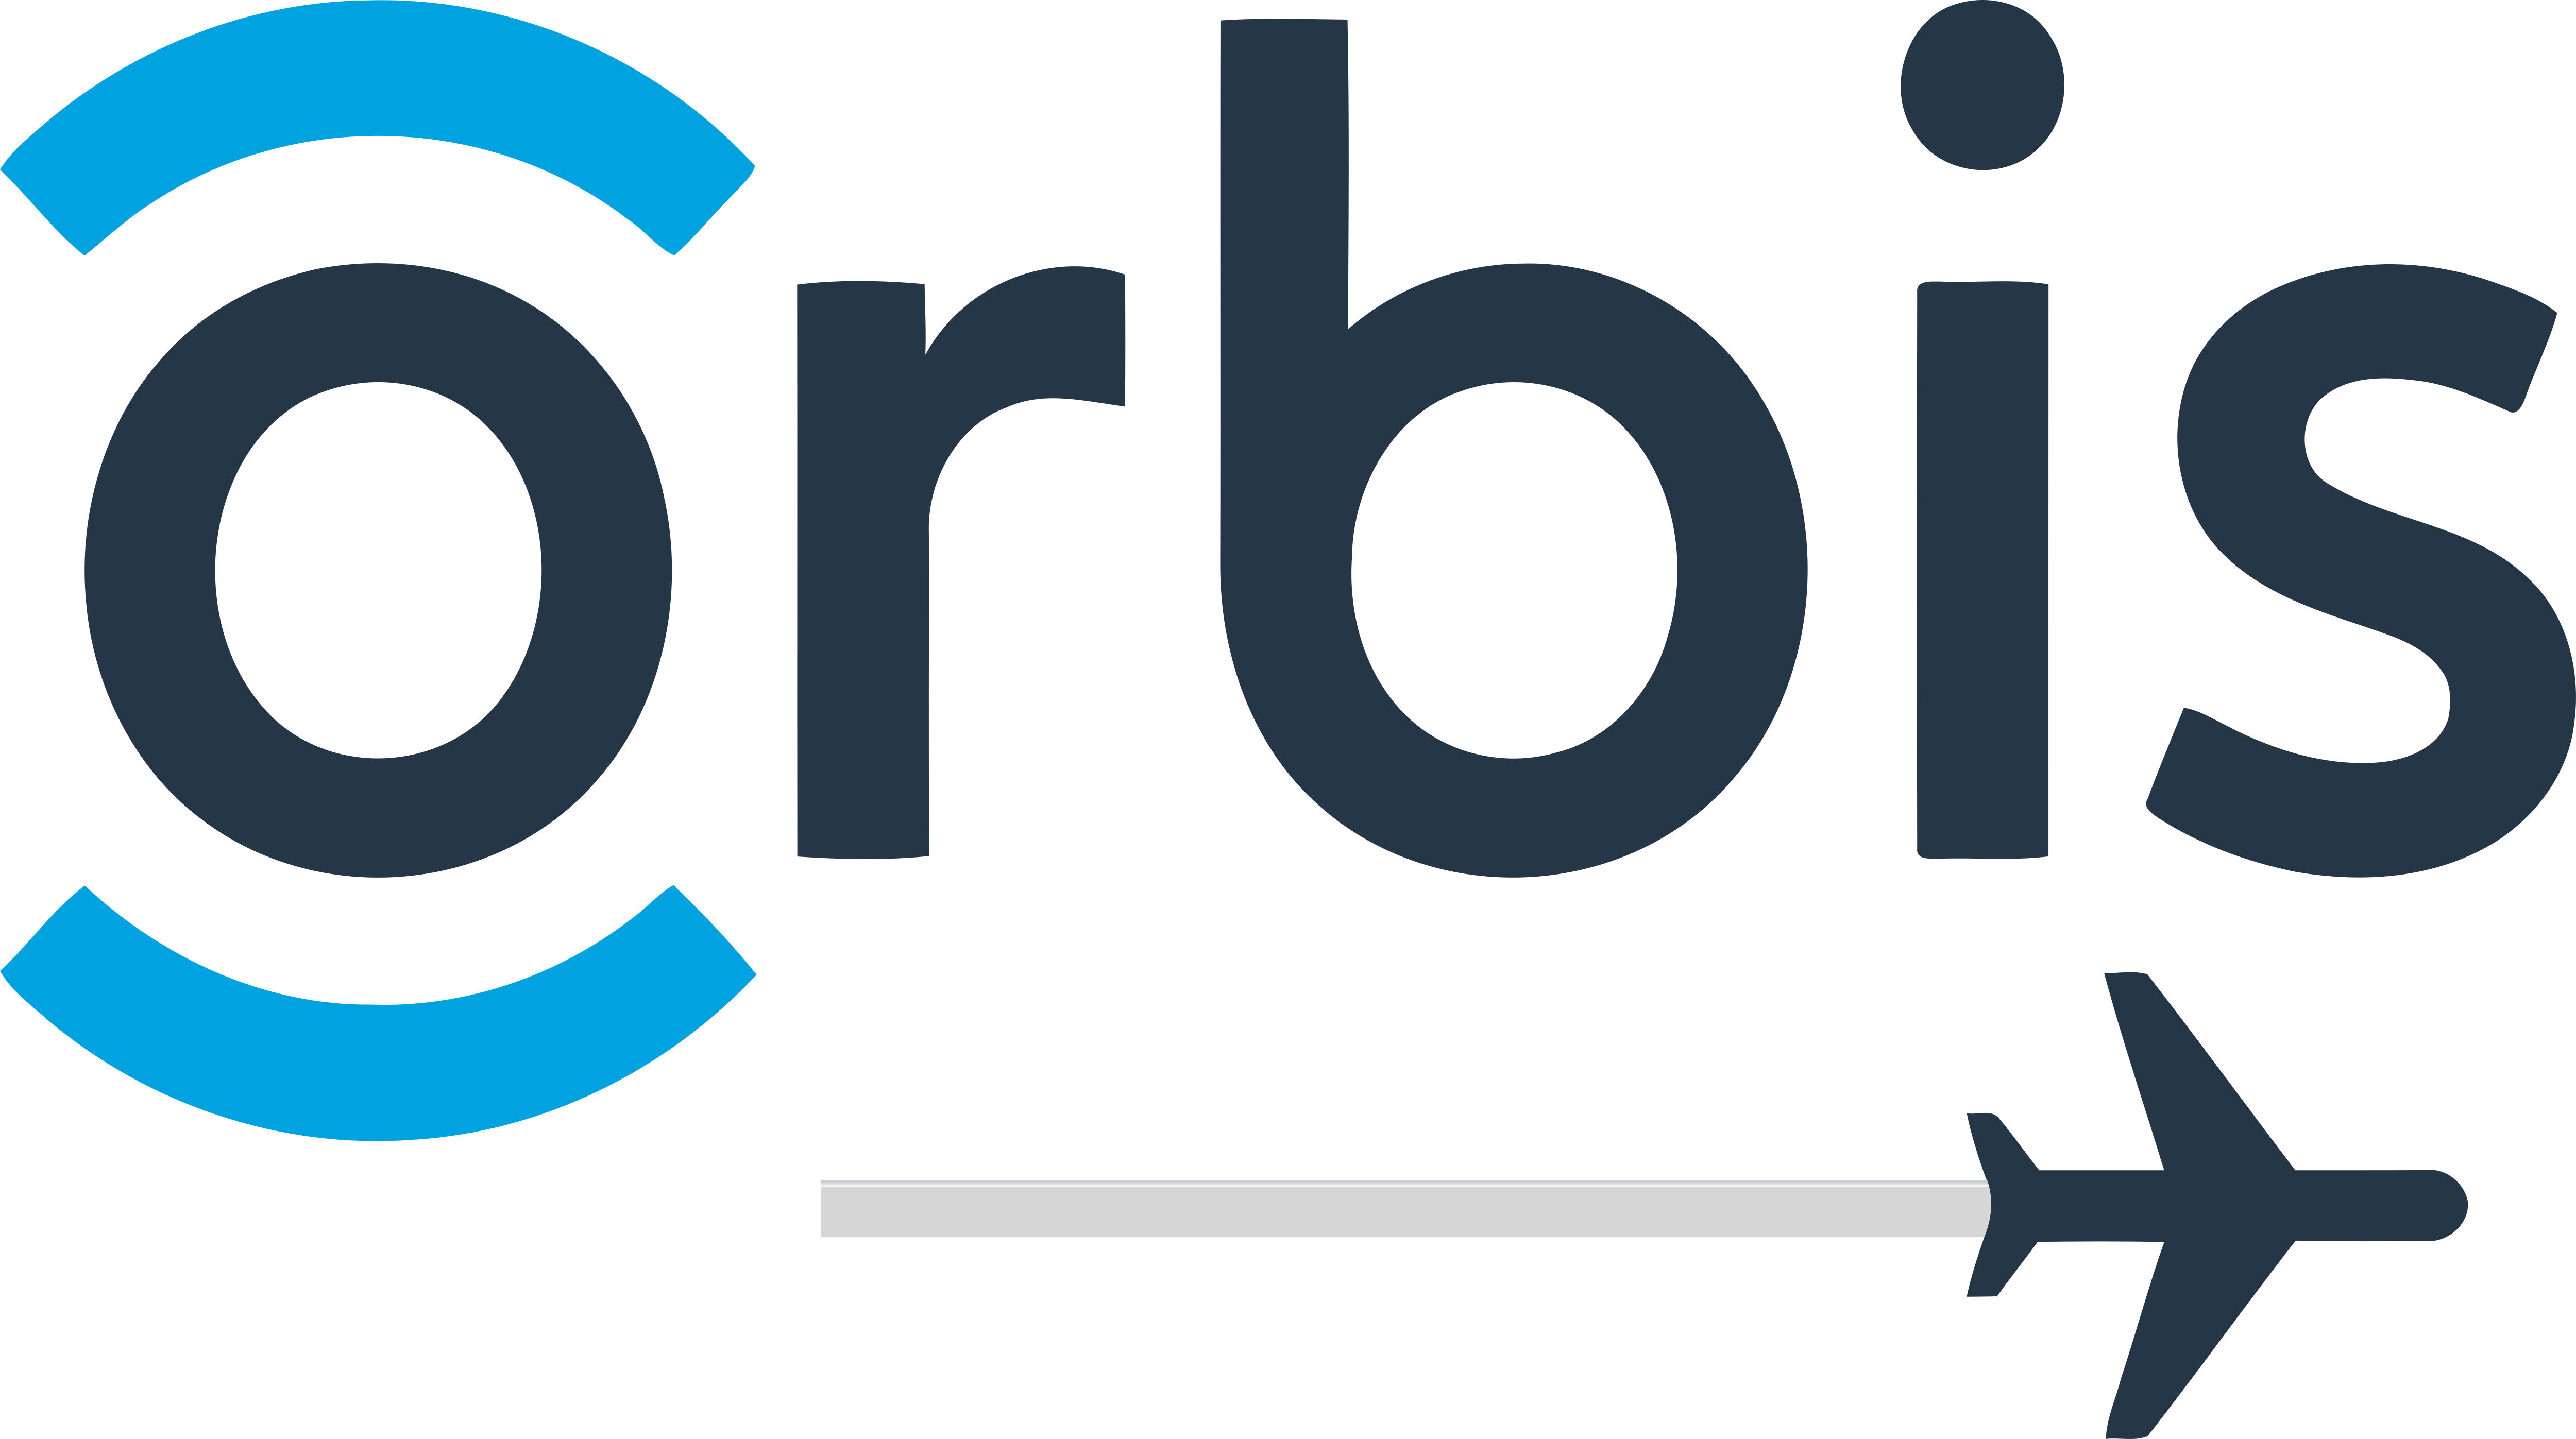 orbis-international-logos-download